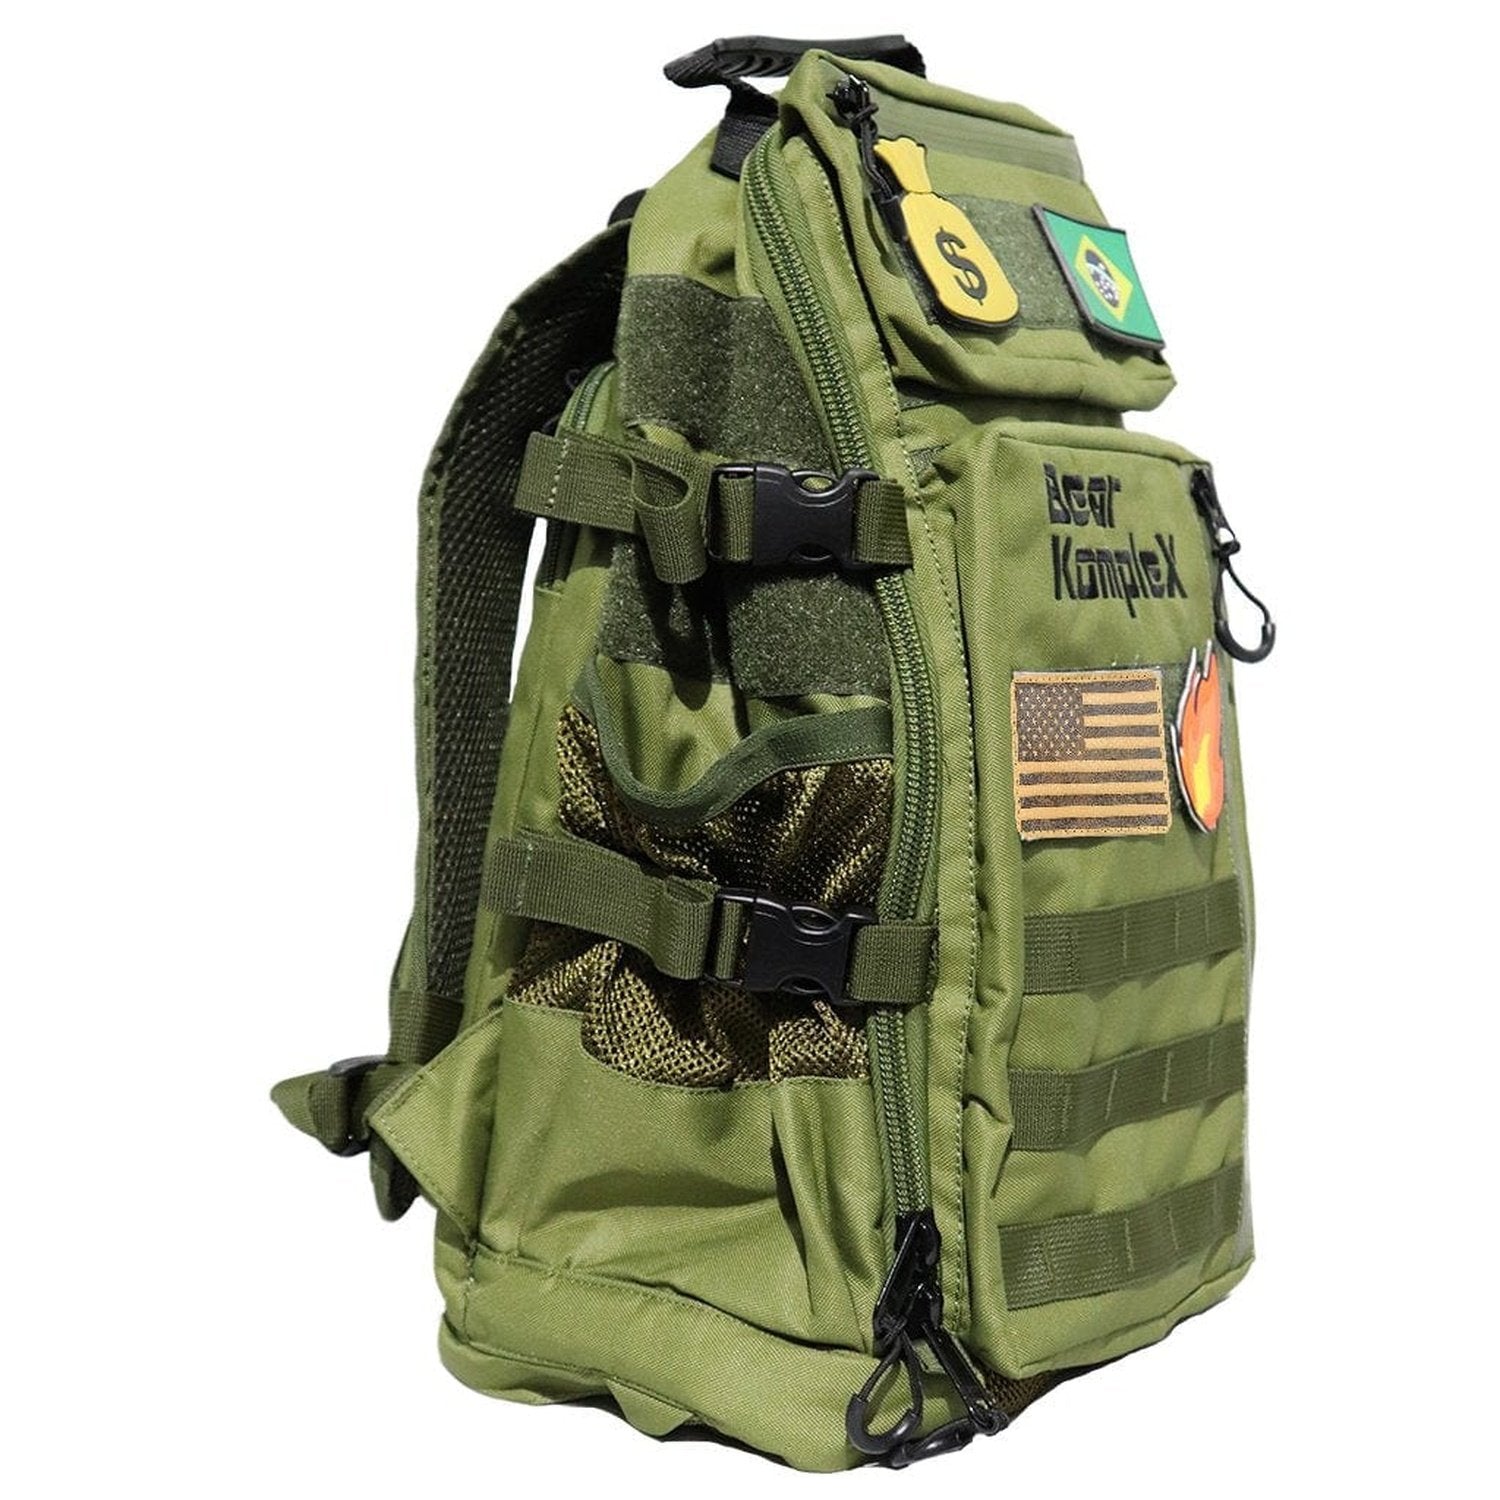 Bear KompleX Commuter Backpack (25L) Olive kaufen bei HighPowered.ch